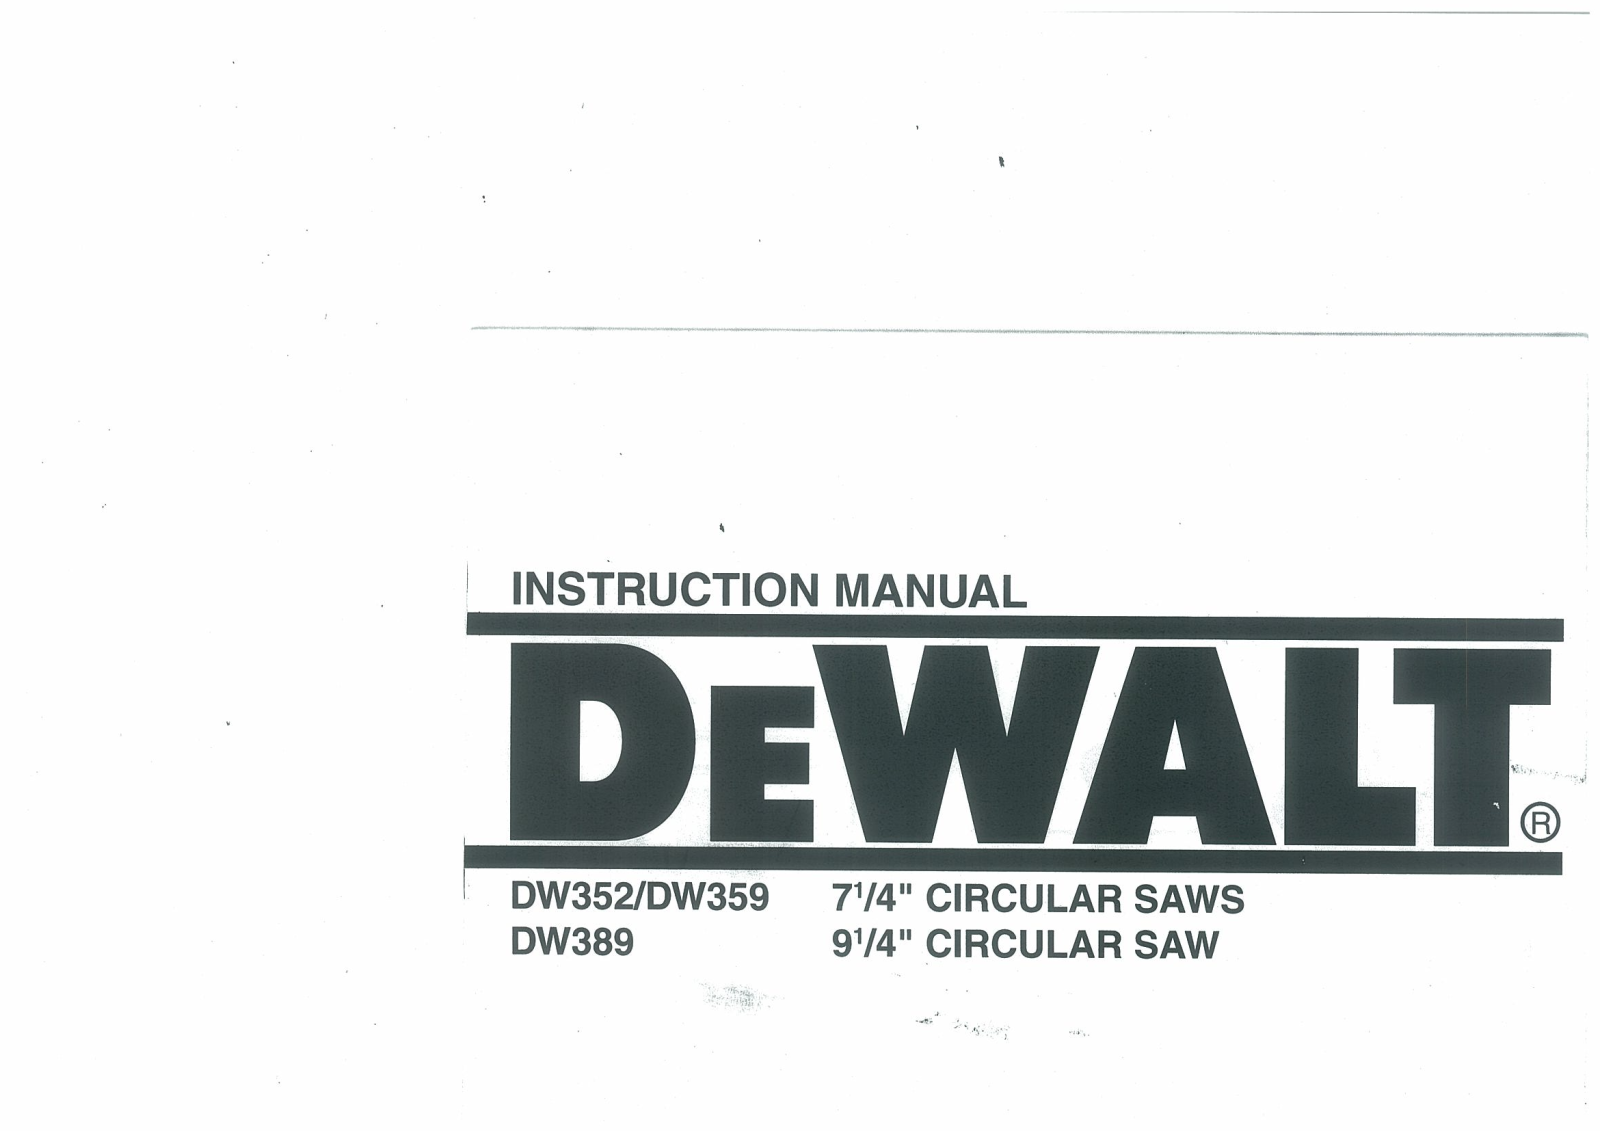 DeWalt DW359, DW389, DW352 User Manual